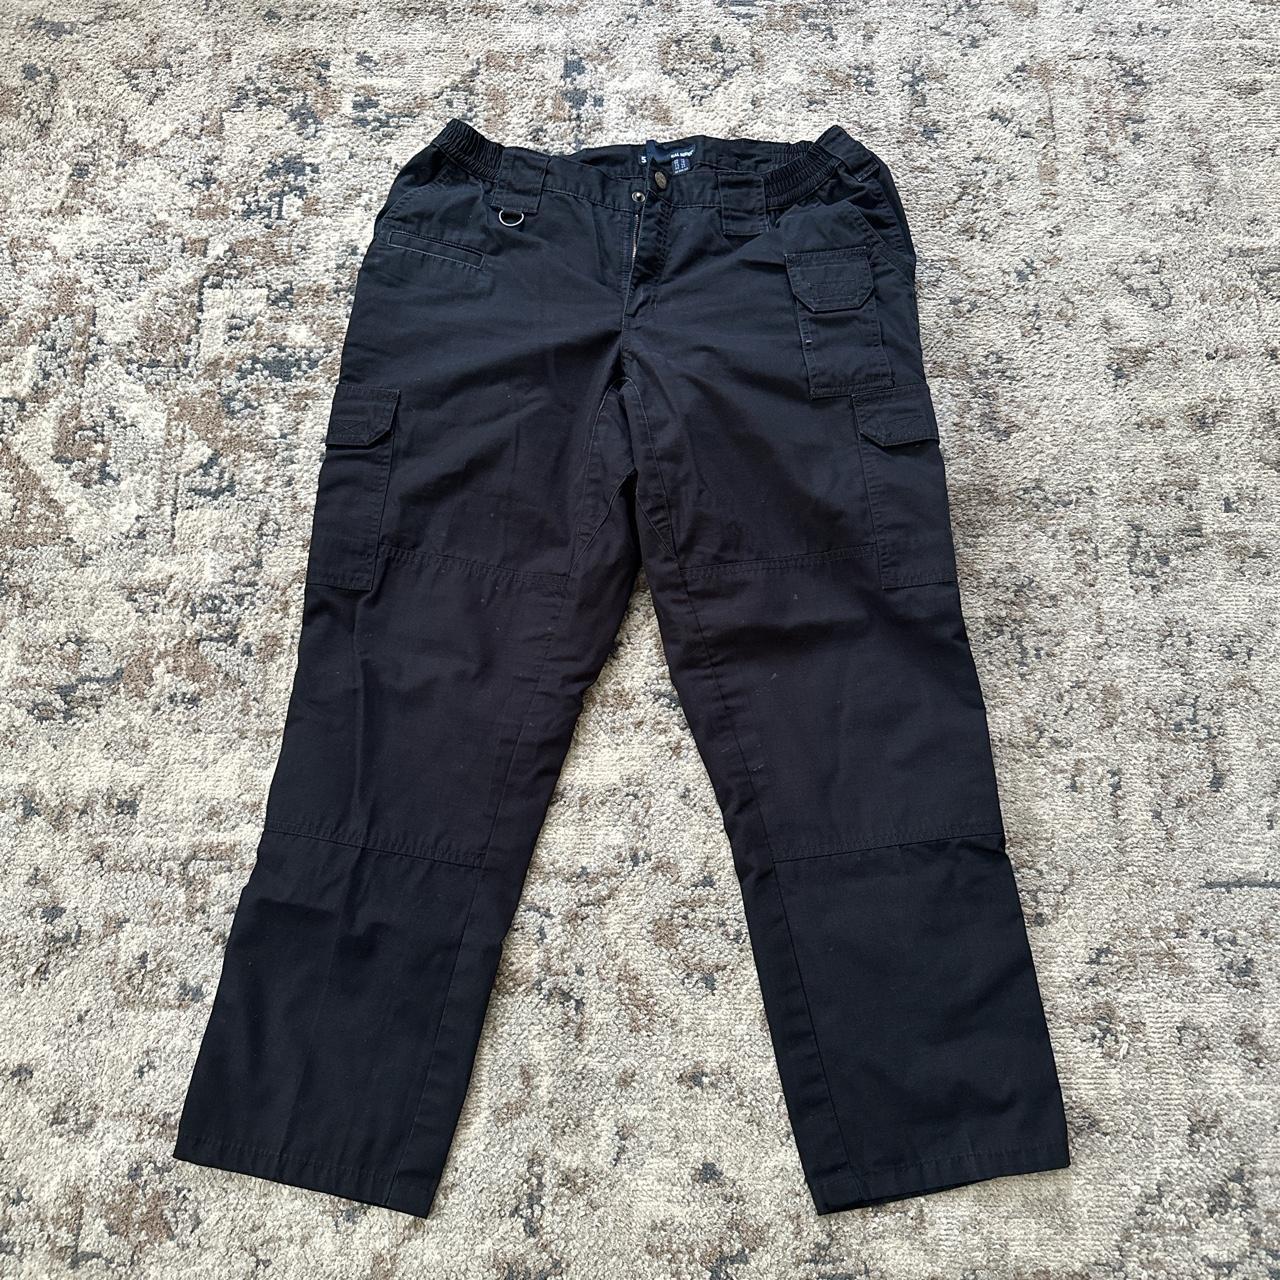 Black cargo pants w/ lots of pockets - Depop